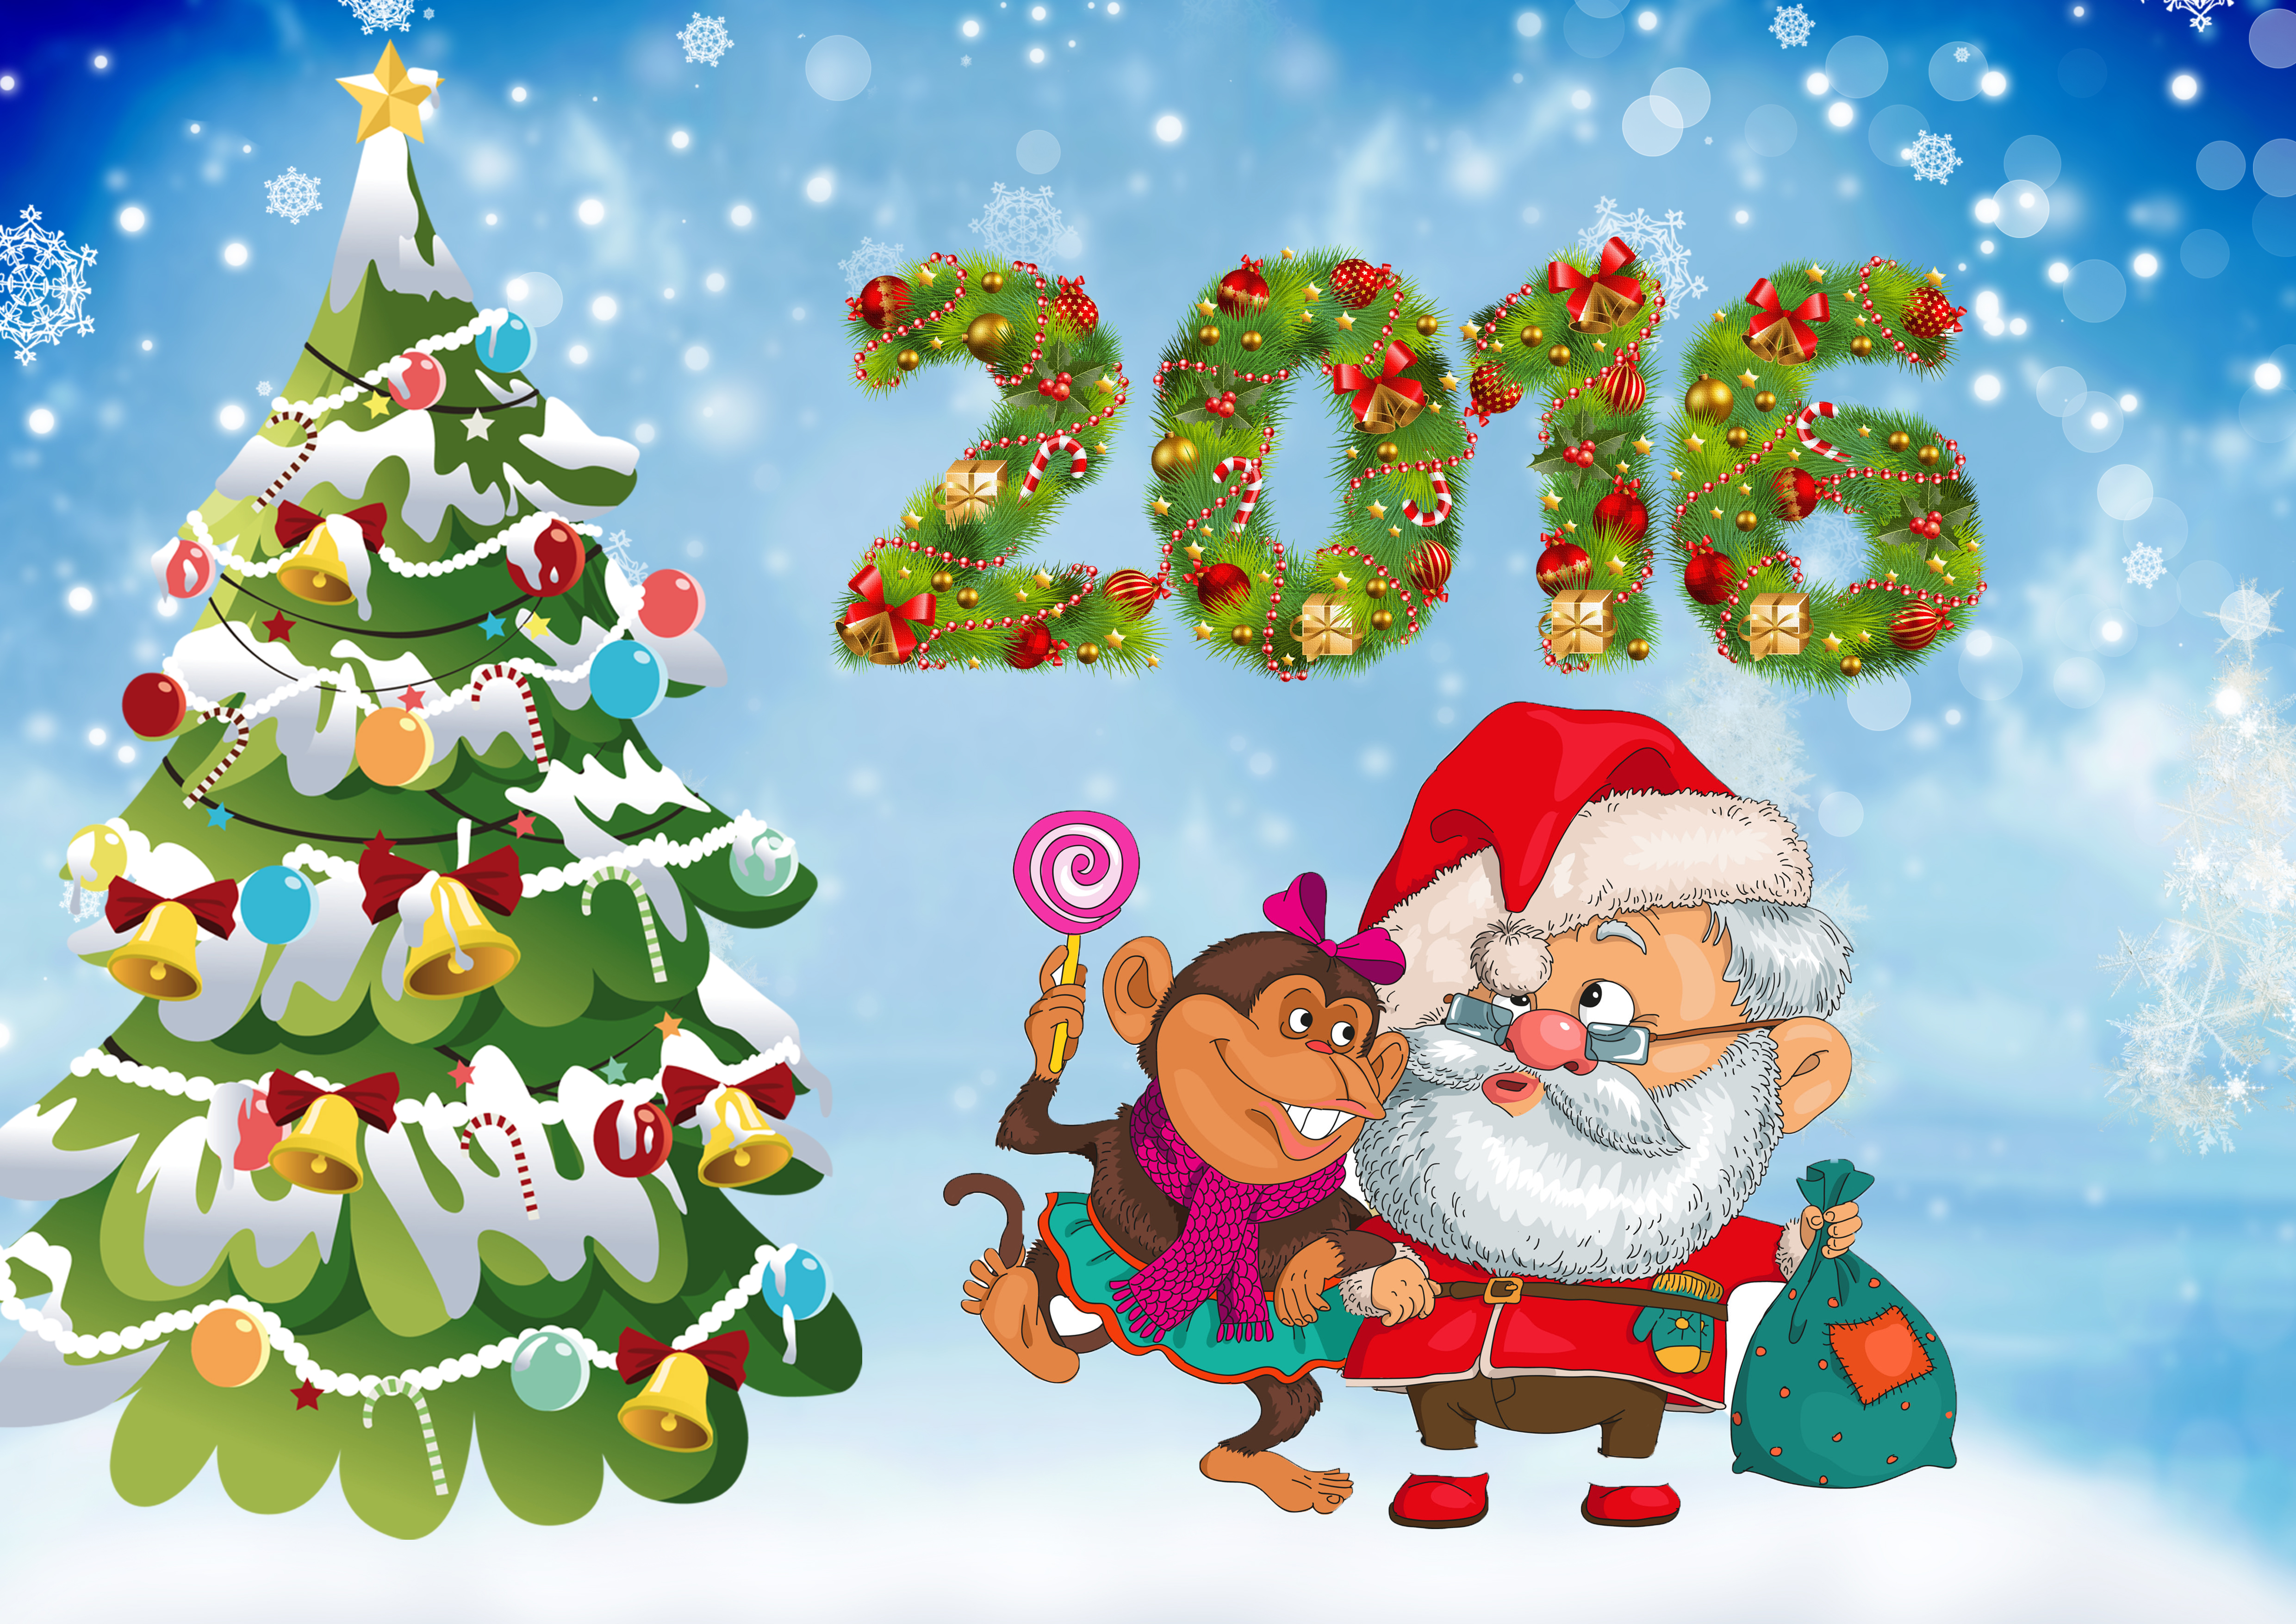 Новый год обезьян. С новым годом. Обезьяна новый год. Открытка к новому году 2016. Новогодние картинки 2016.